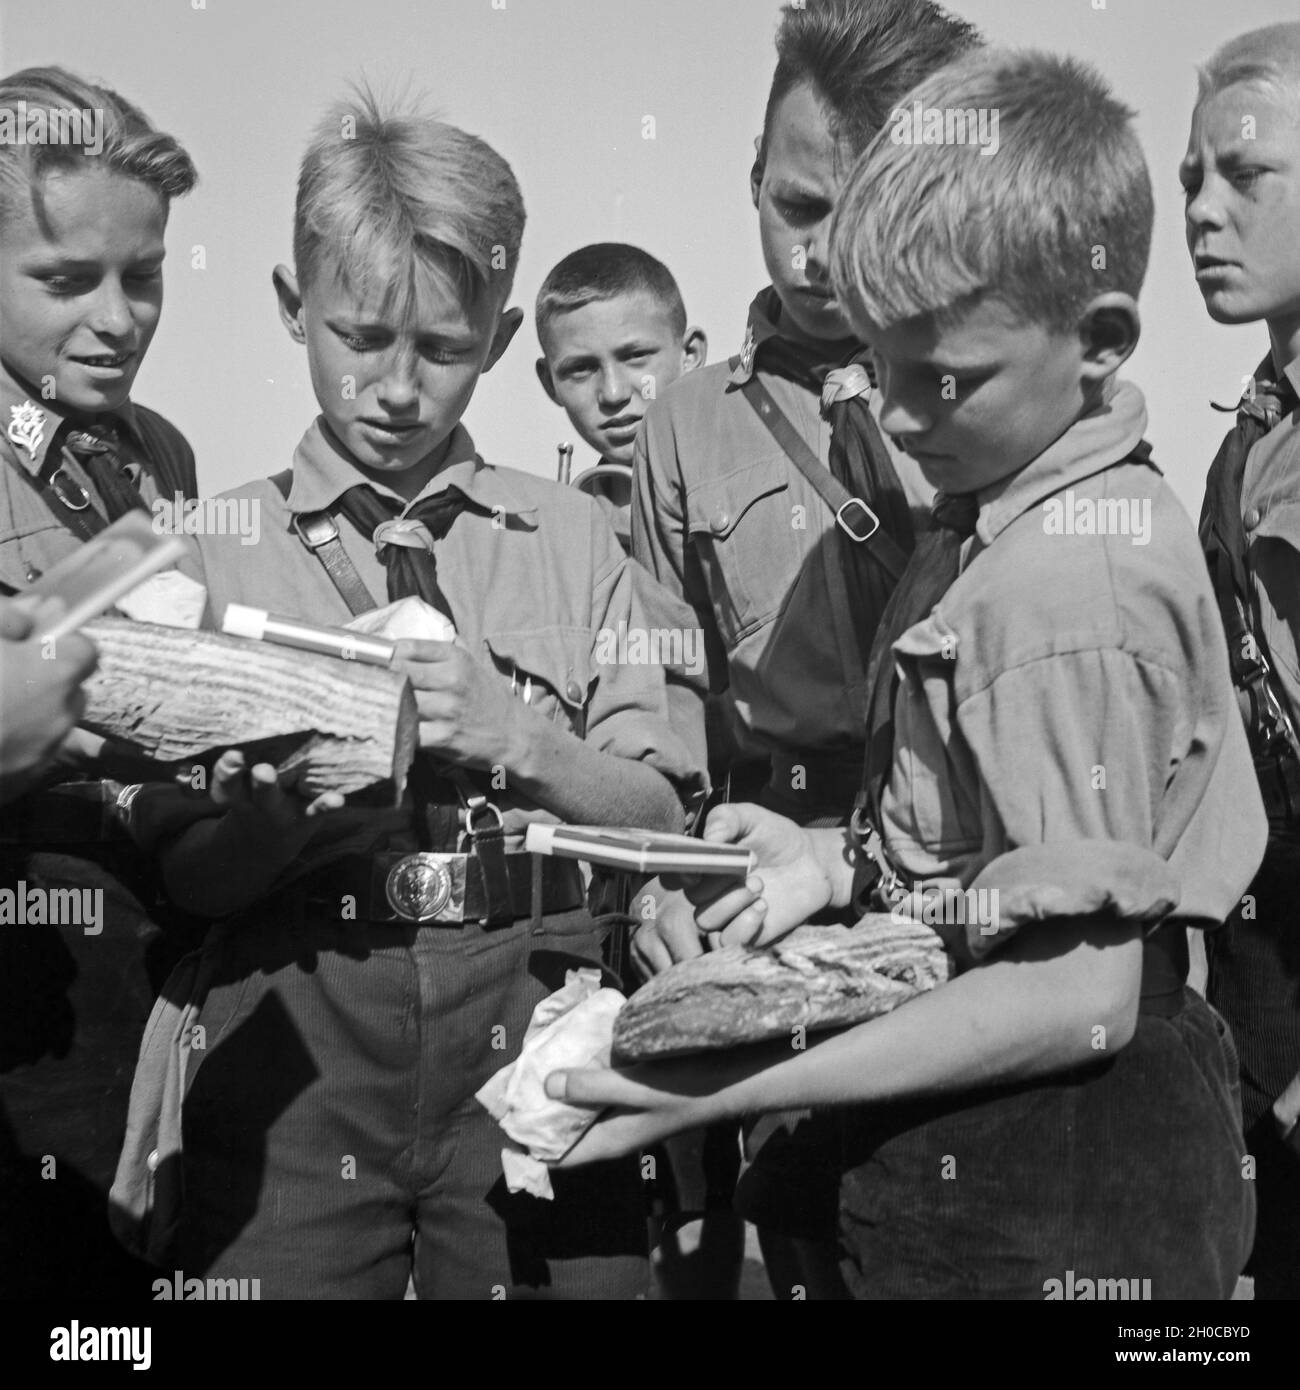 Hitlerjungen bei der Brotausgabe im Hitlerjugend Lager, Österreich 1930er Jahre. Hitler youths getting fresh bread and chocolate at the Hitler youth camp, Austria 1930s. Stock Photo